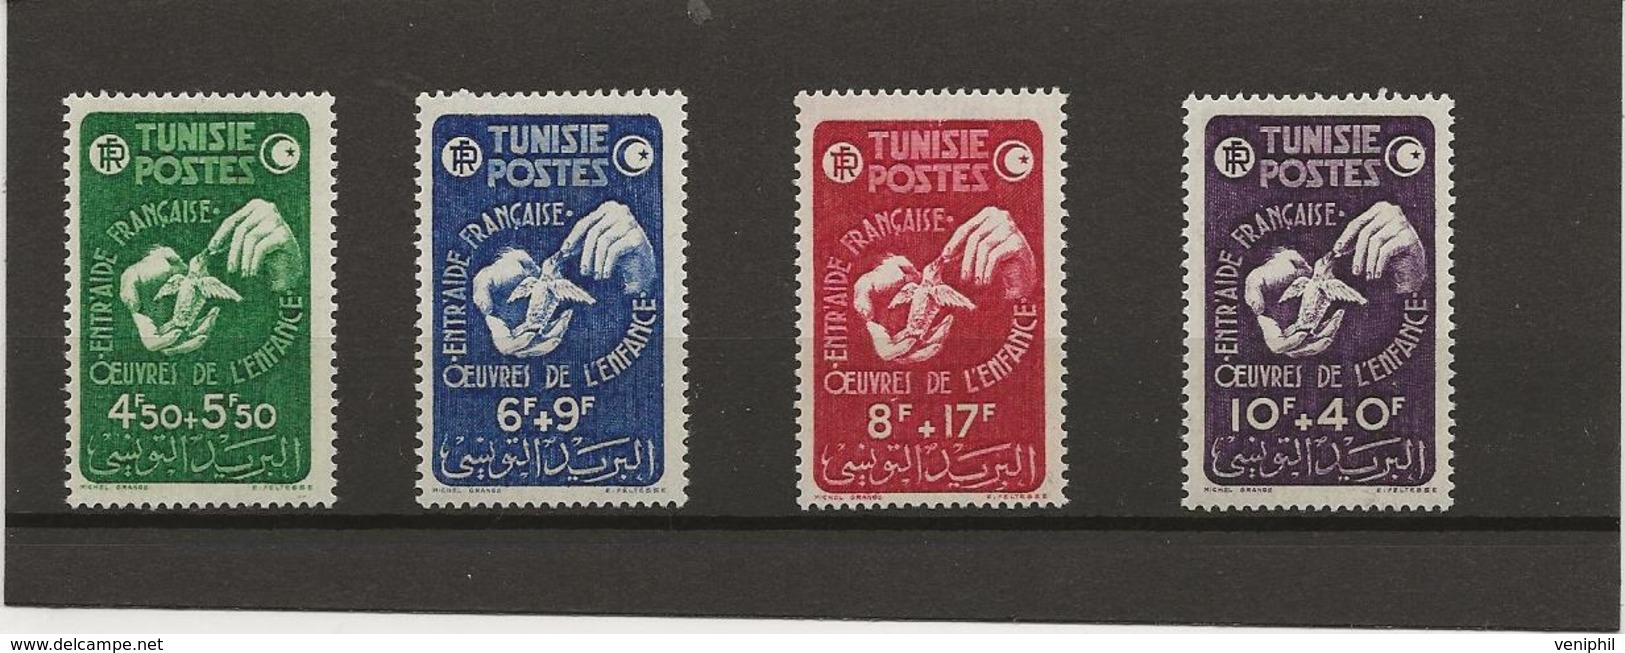 TUNISIE - N° 320 A 323 NEUF SANS CHARNIERE  -ANNEE 1947 - Ungebraucht